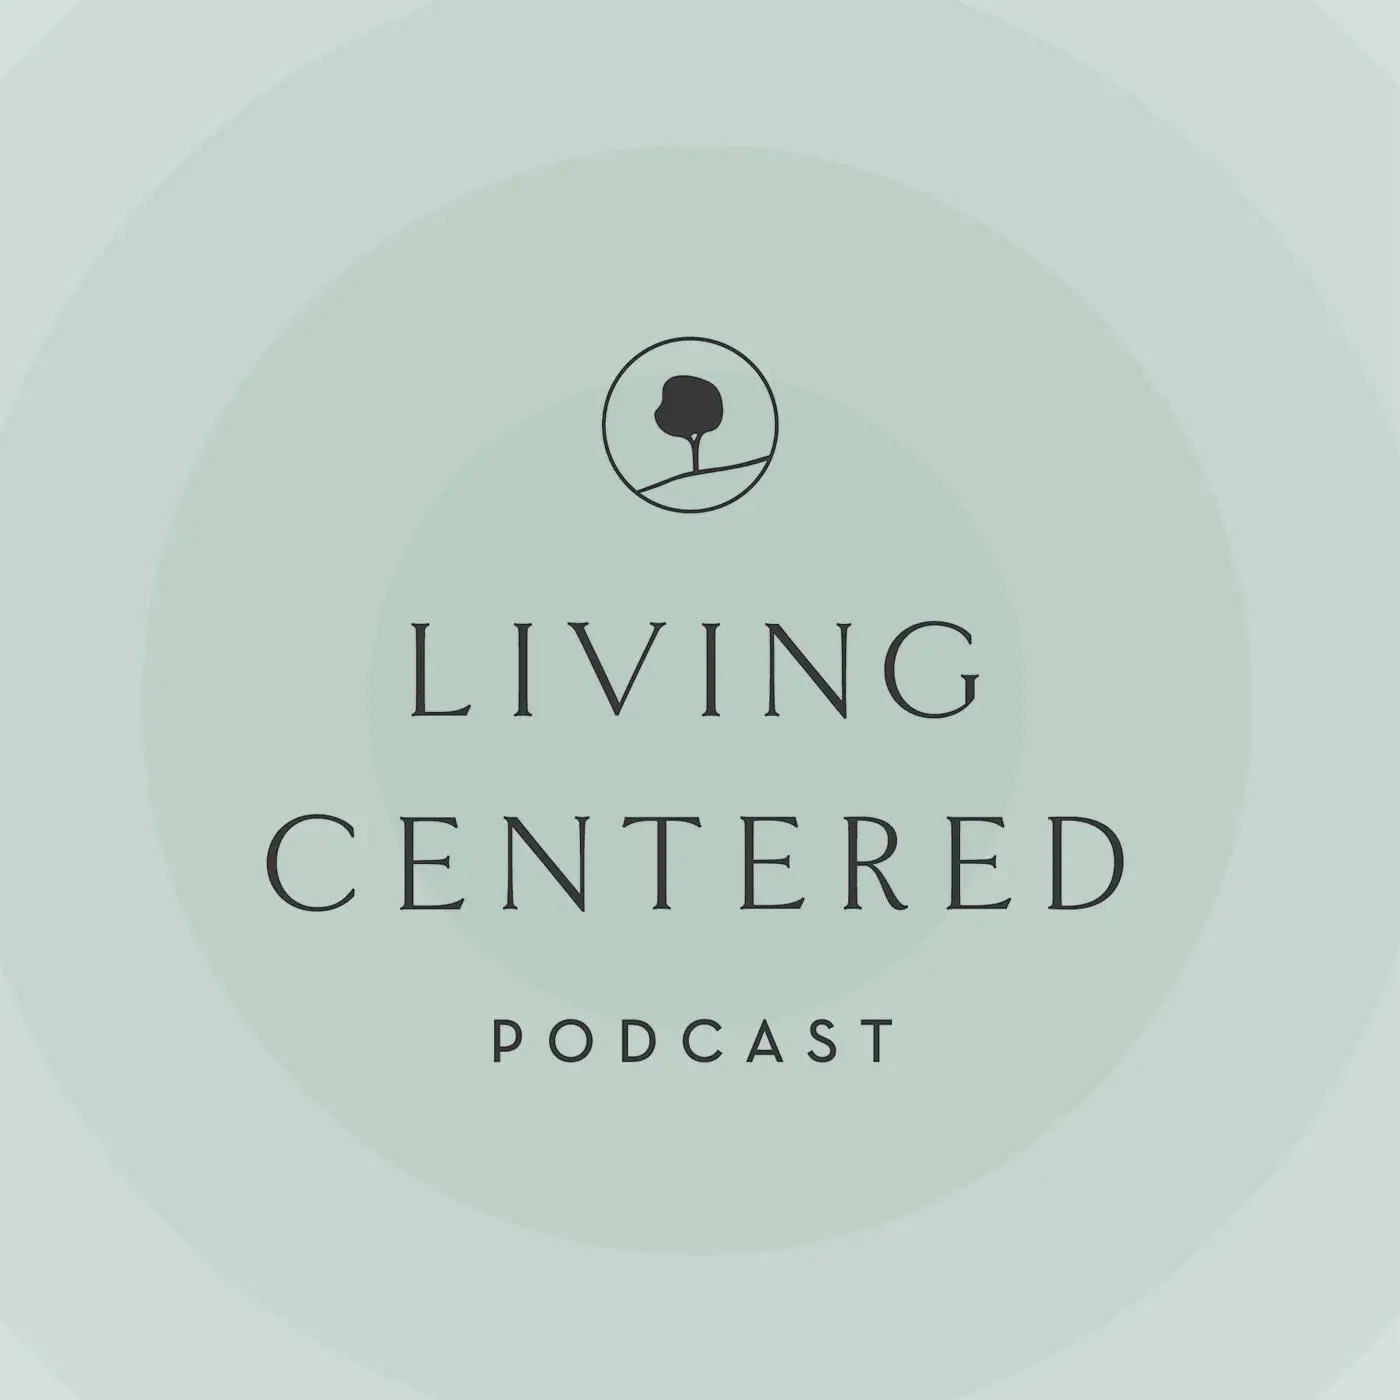 Living centered